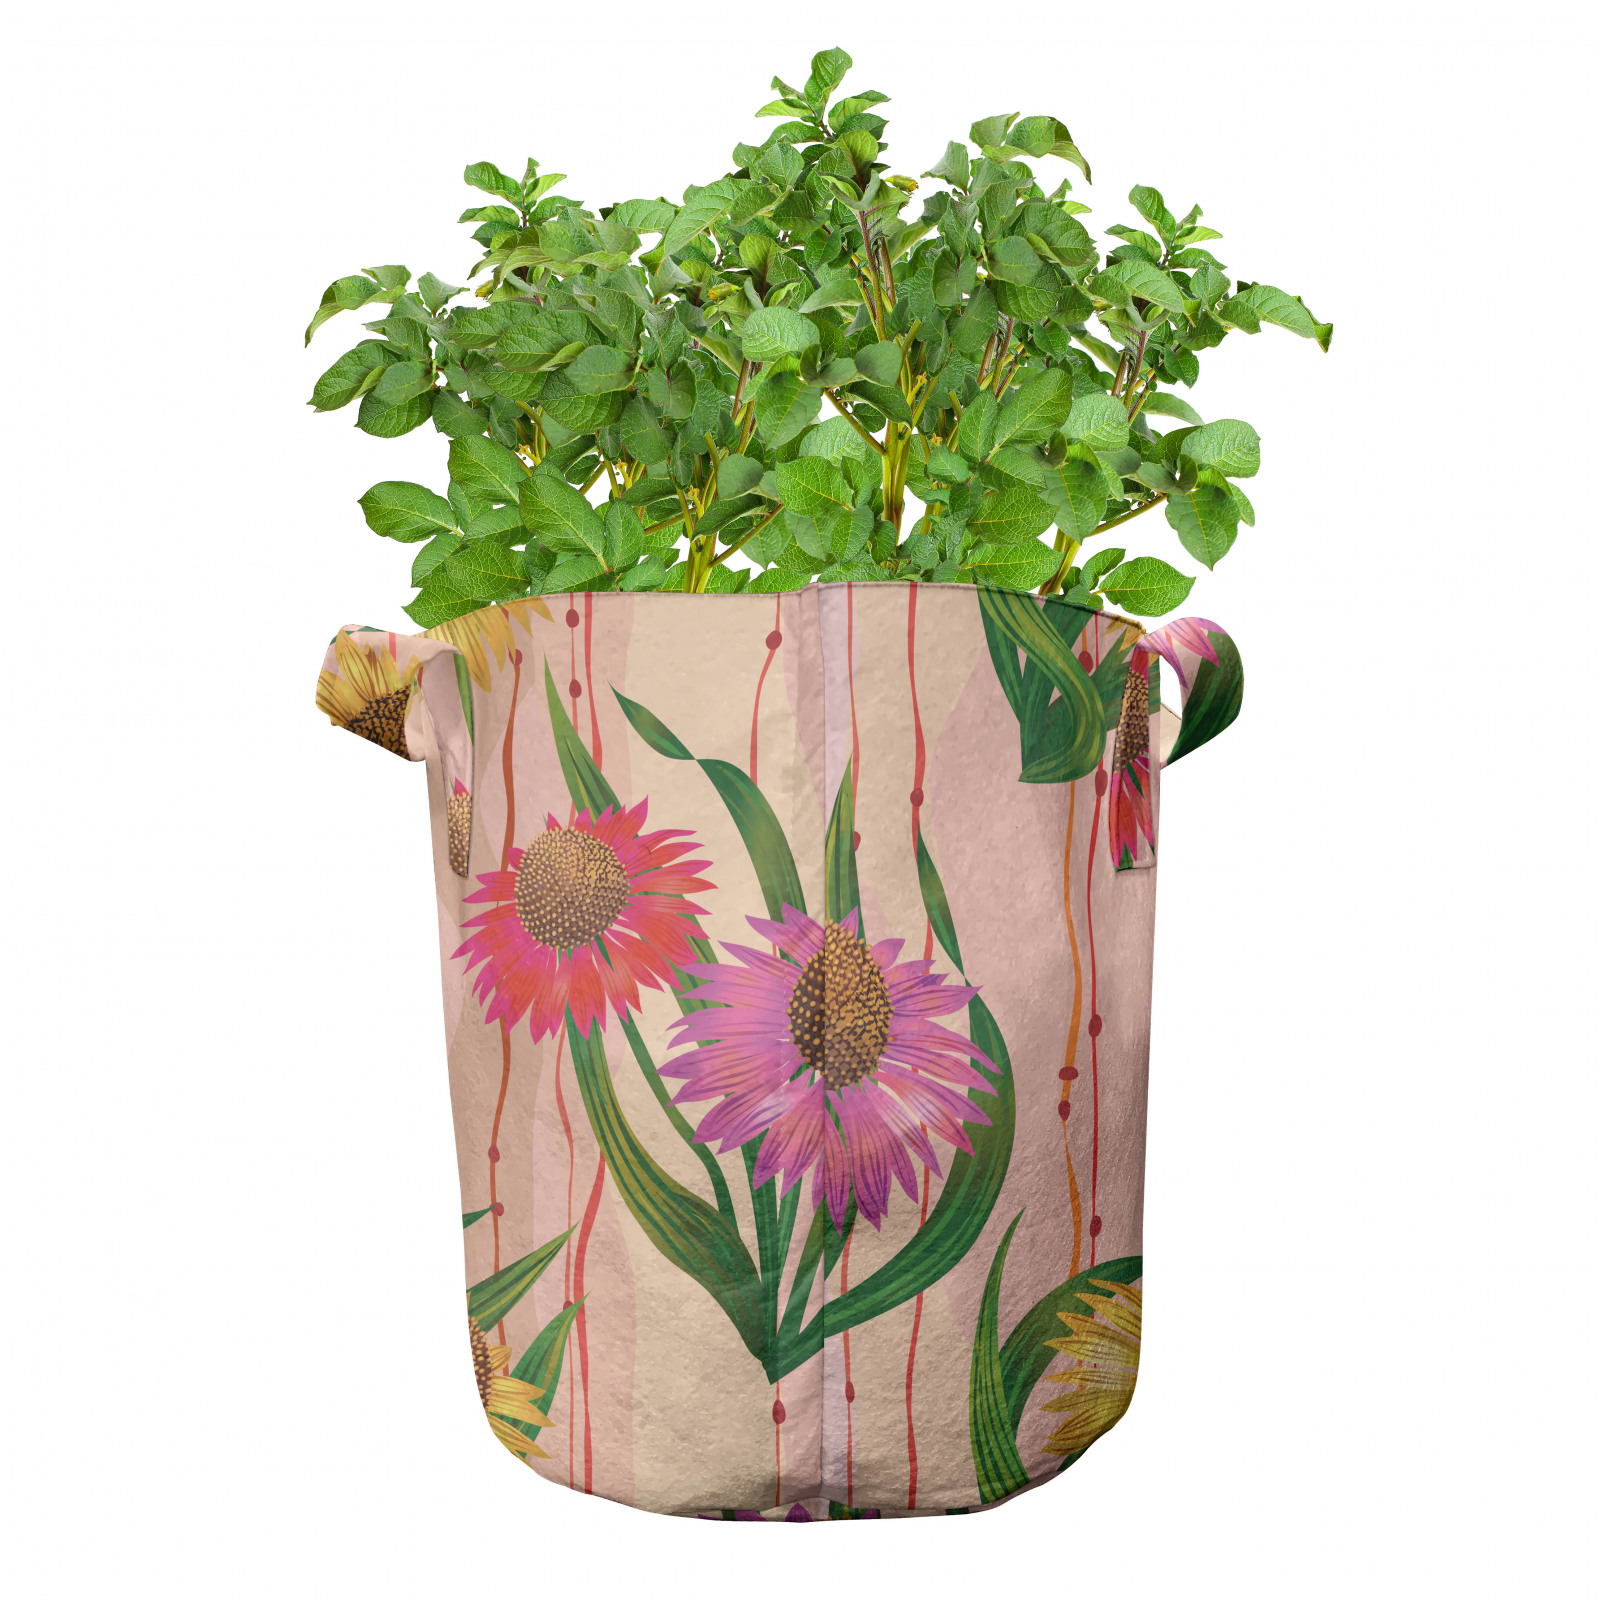 Sonnenhut 5er Set Stofftöpfe Stofftaschen Botanik-Streifen Blumen